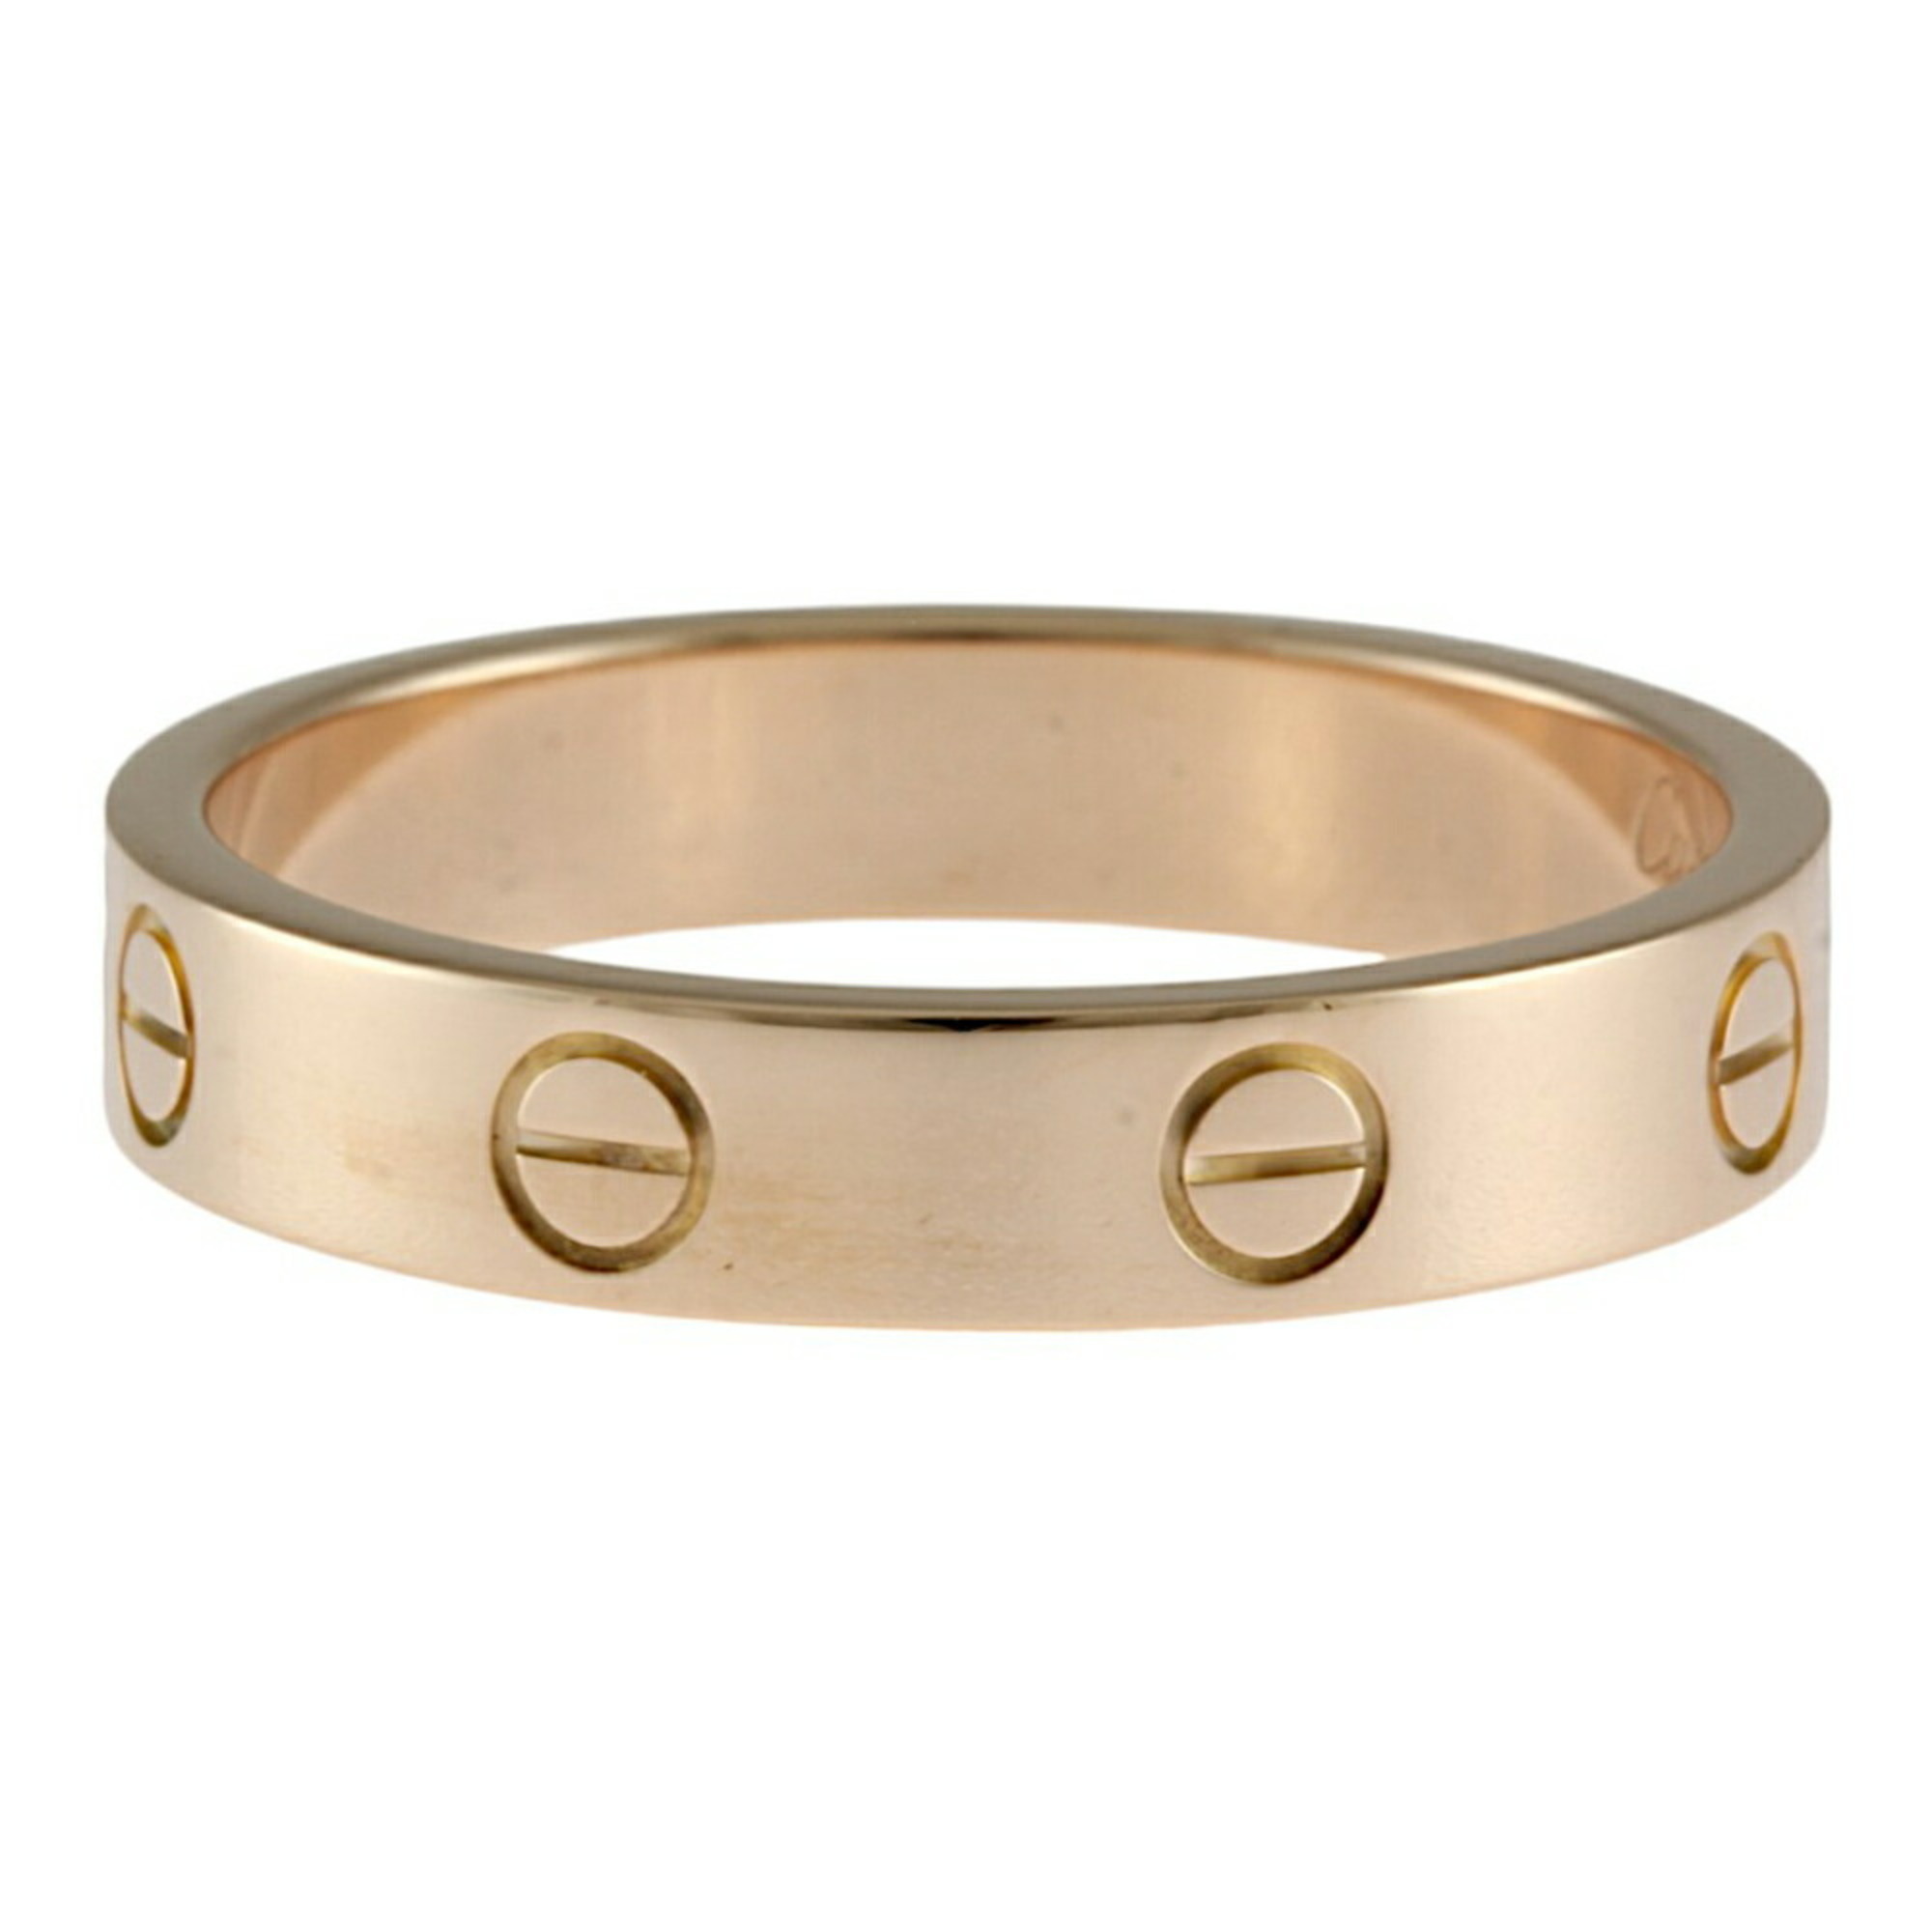 Cartier Love Ring, Size 16.5, 18K Gold, Women's, CARTIER